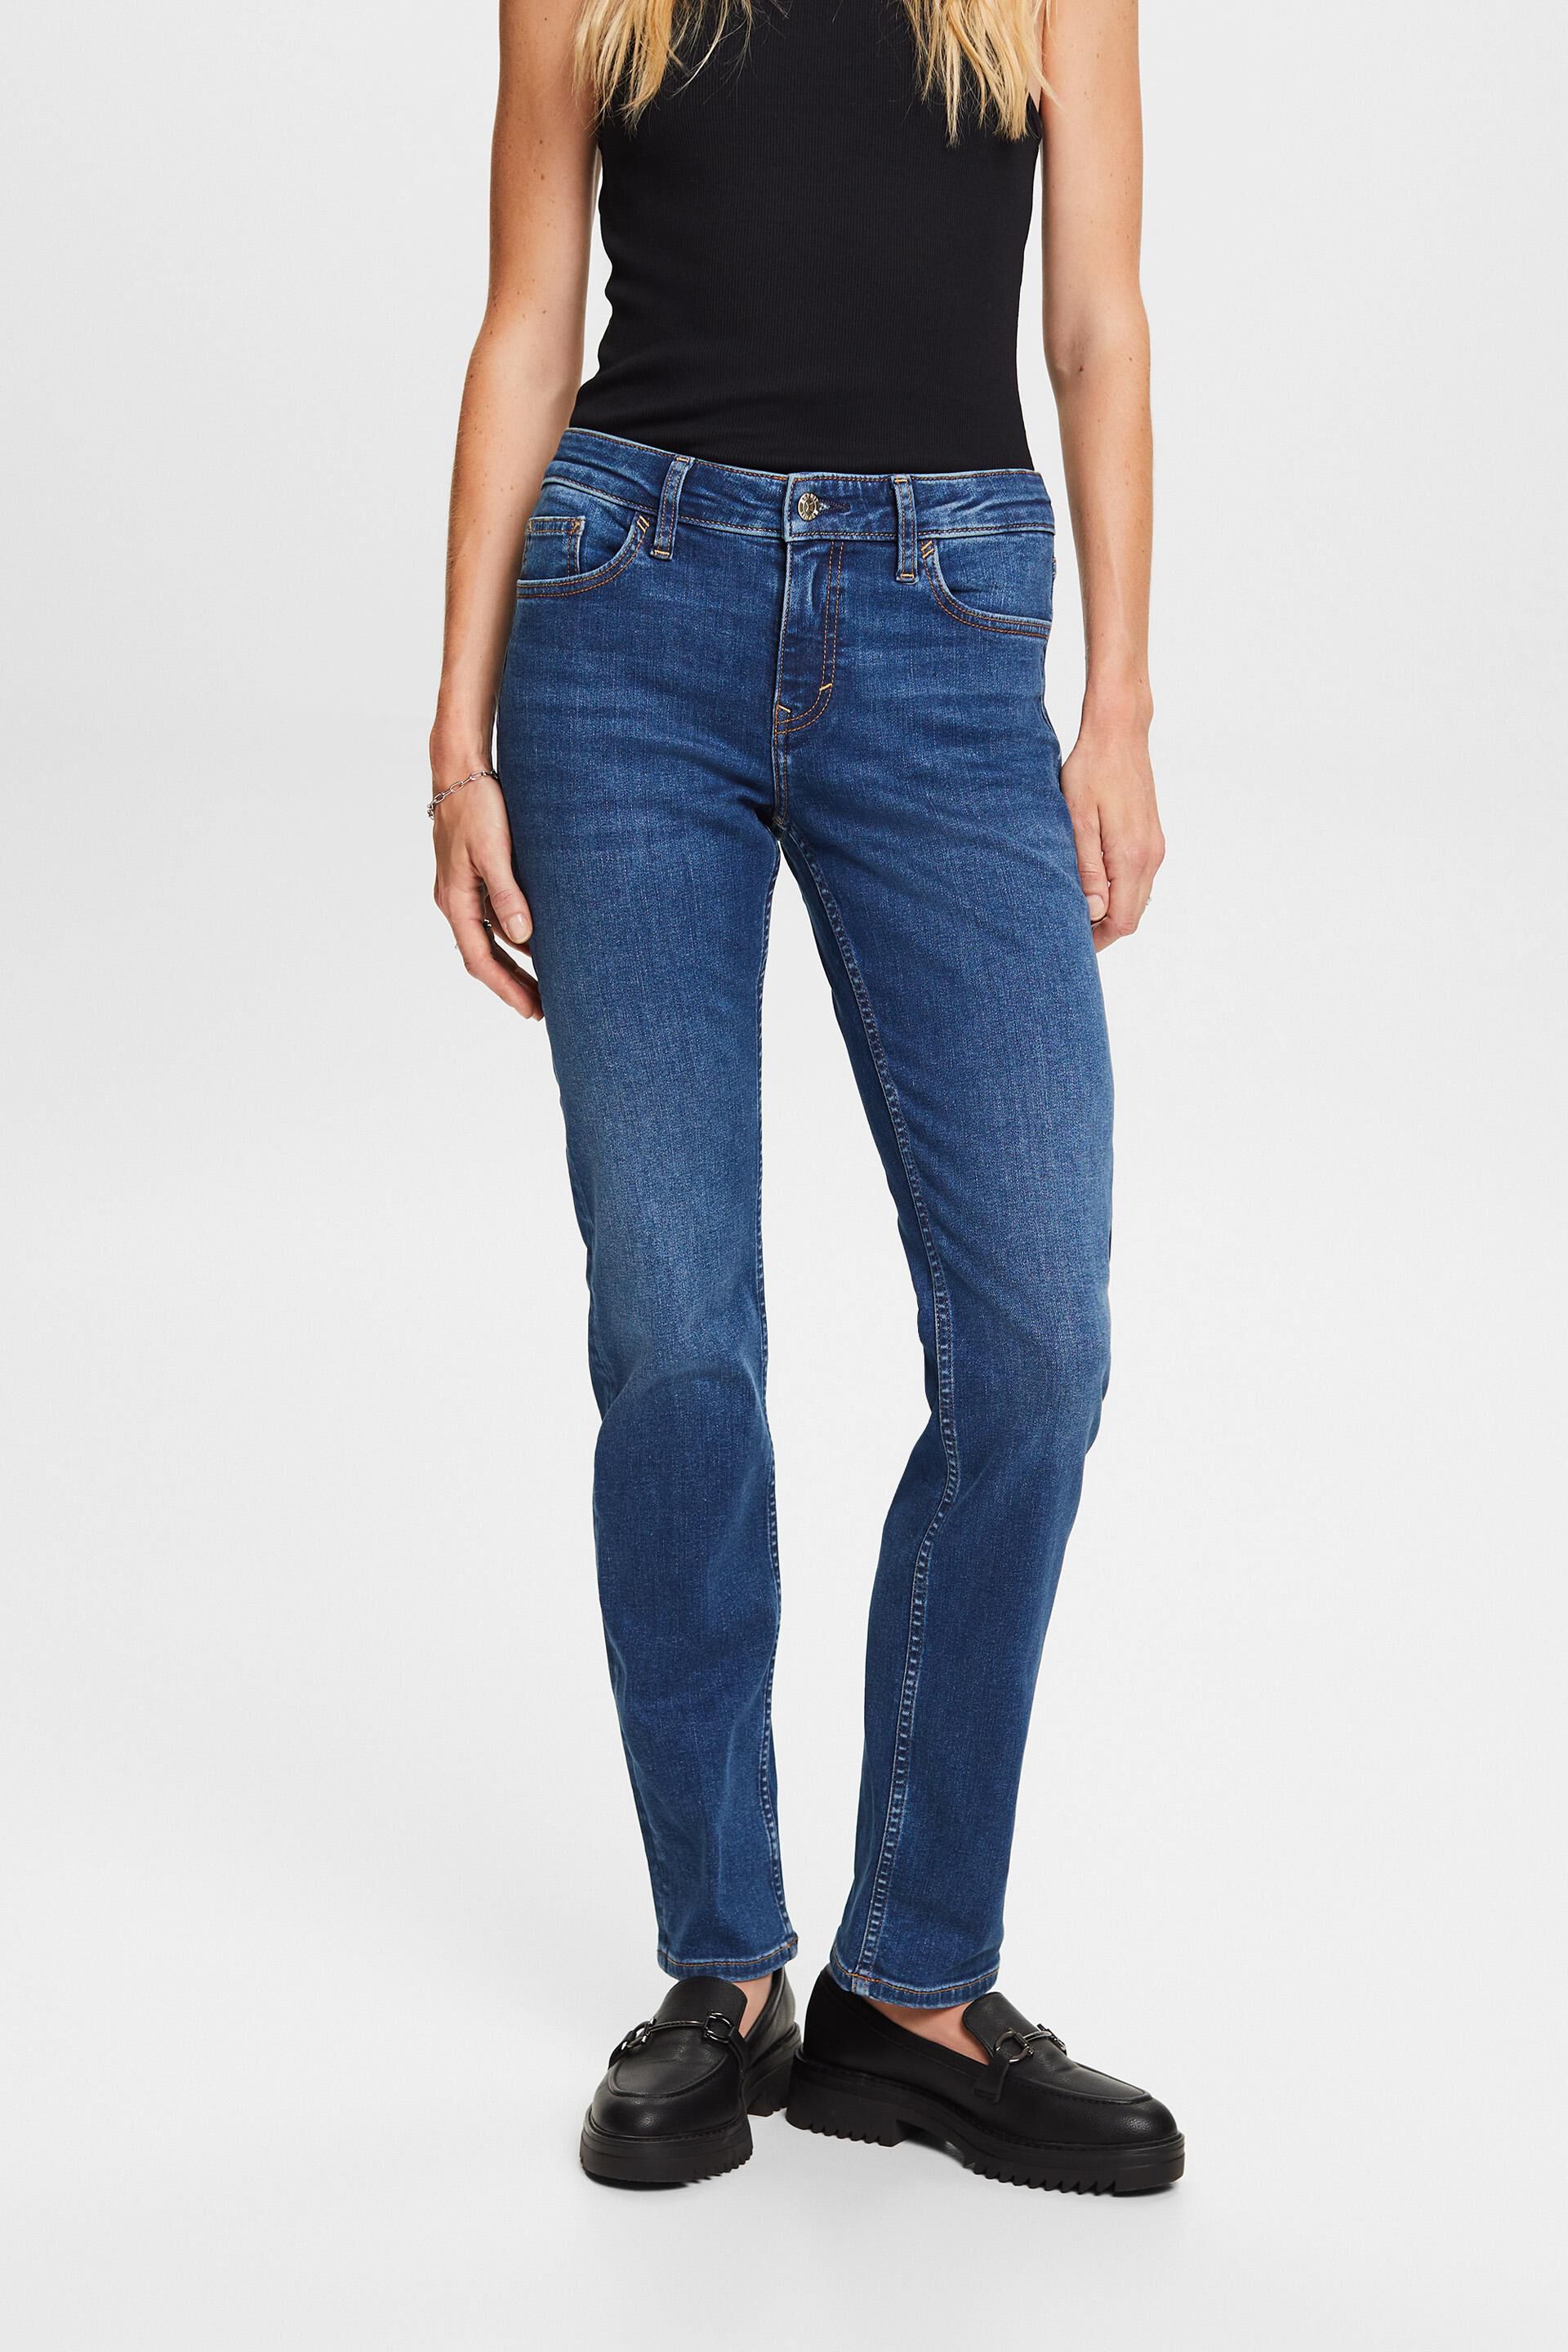 Esprit stretch Straight jeans, leg cotton blend